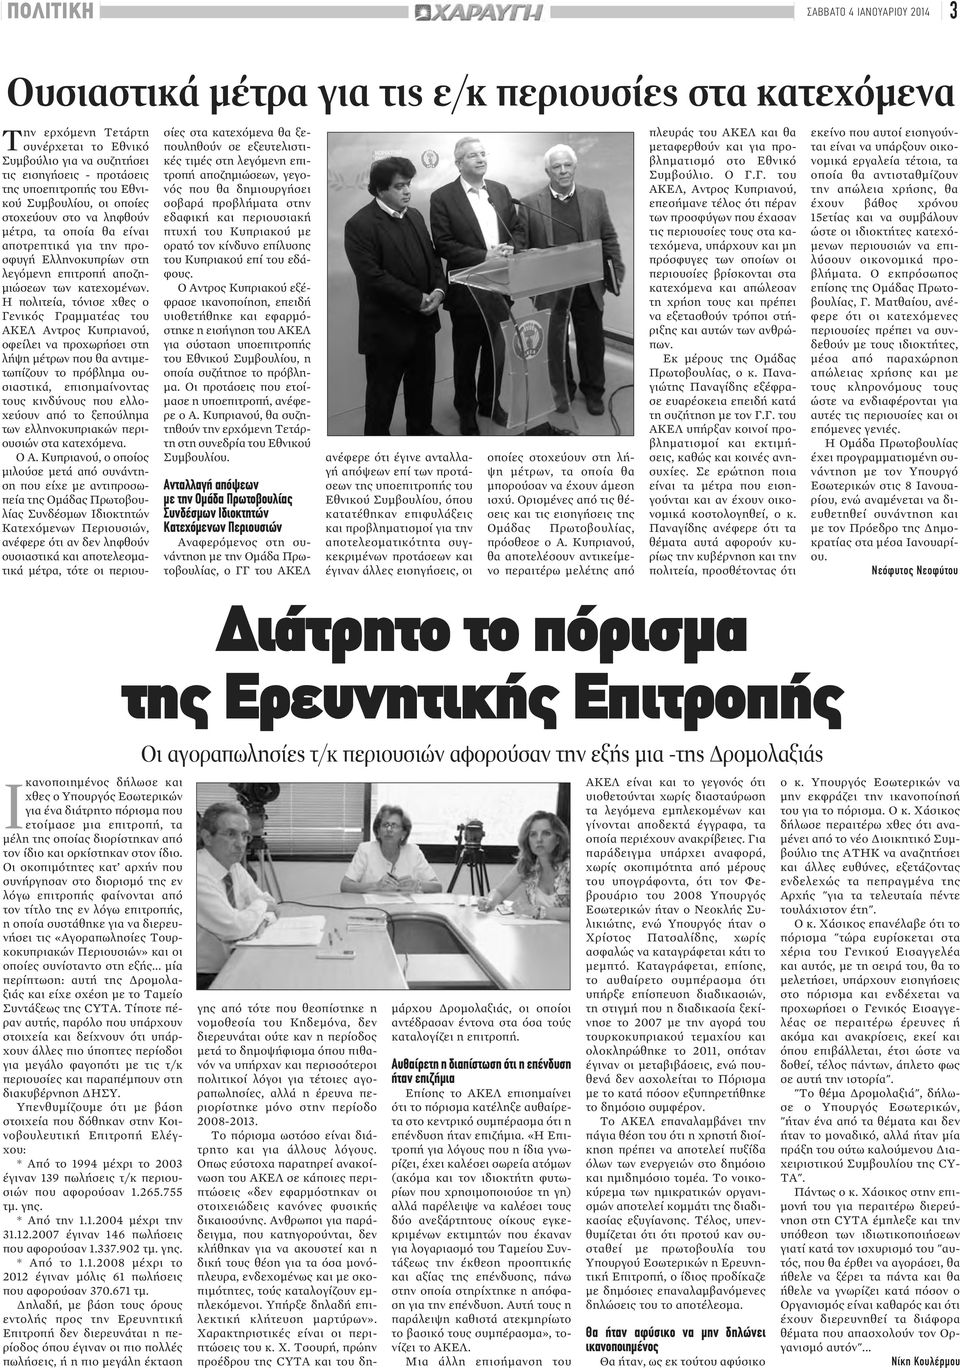 Η πολιτεία, τόνισε χθες ο Γενικός Γραμματέας του ΑΚΕΛ Αντρος Κυπριανού, οφείλει να προχωρήσει στη λήψη μέτρων που θα αντιμετωπίζουν το πρόβλημα ουσιαστικά, επισημαίνοντας τους κινδύνους που